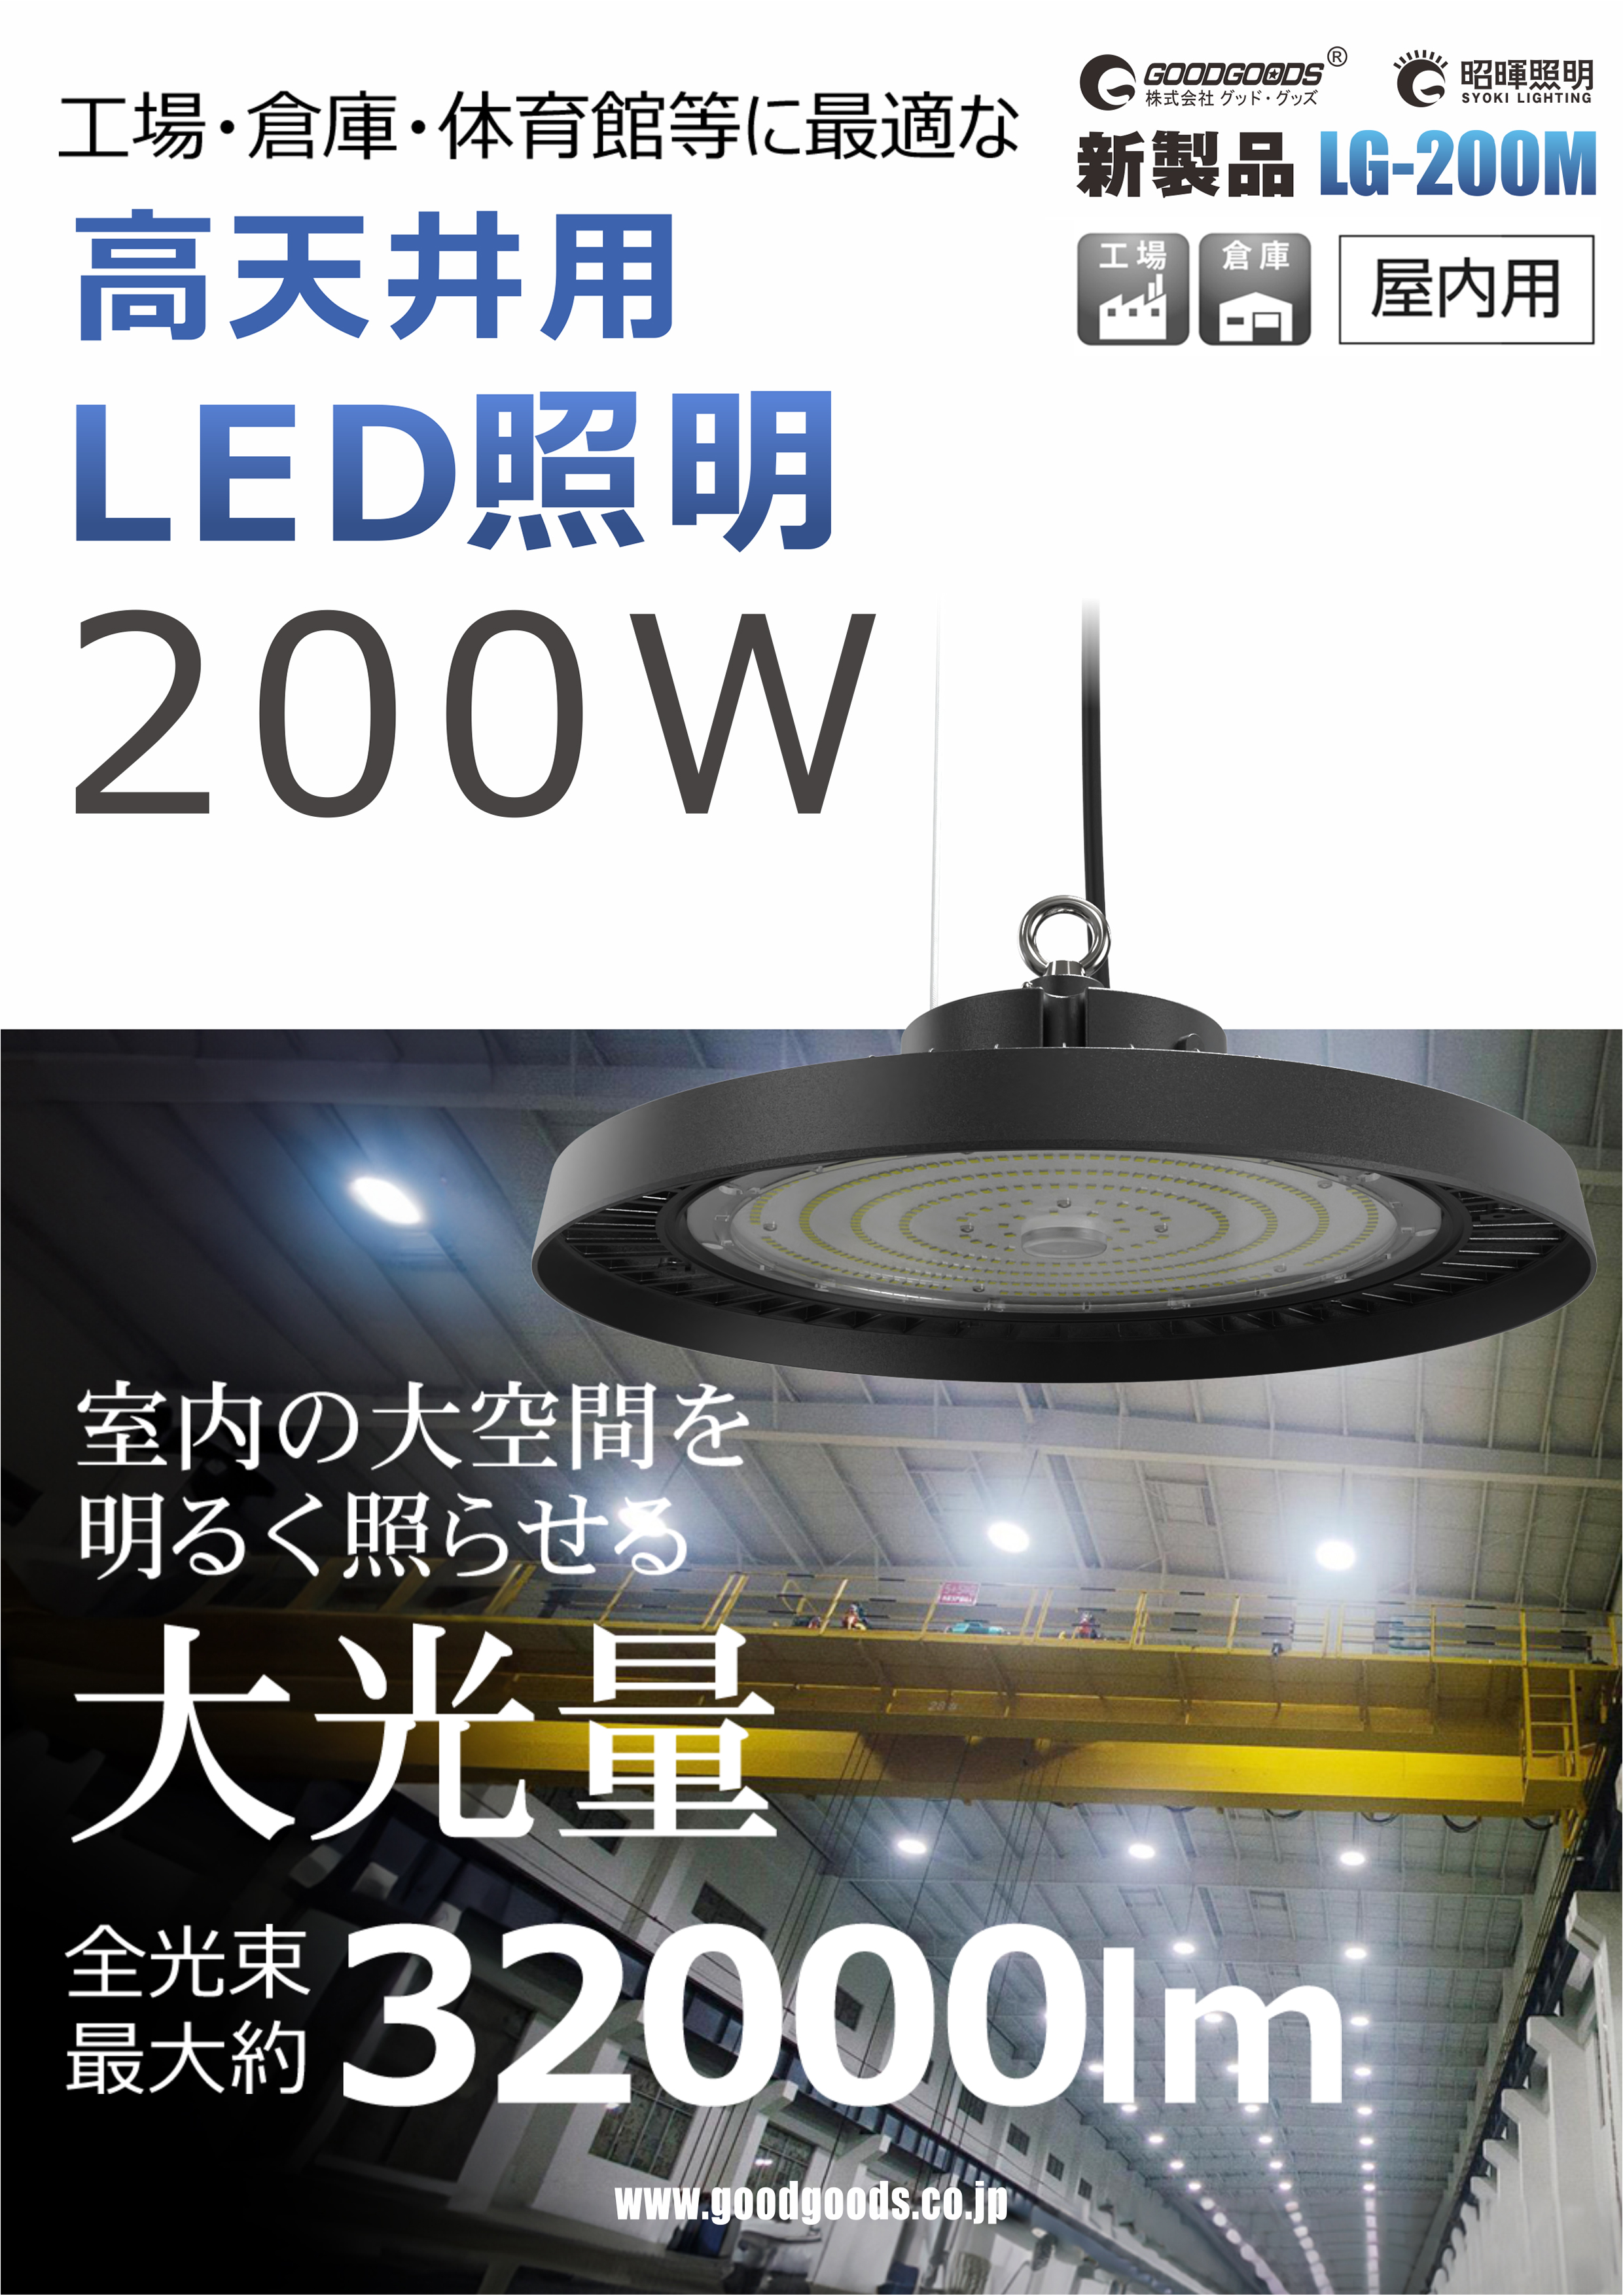 LG-200M製品情報.jpg